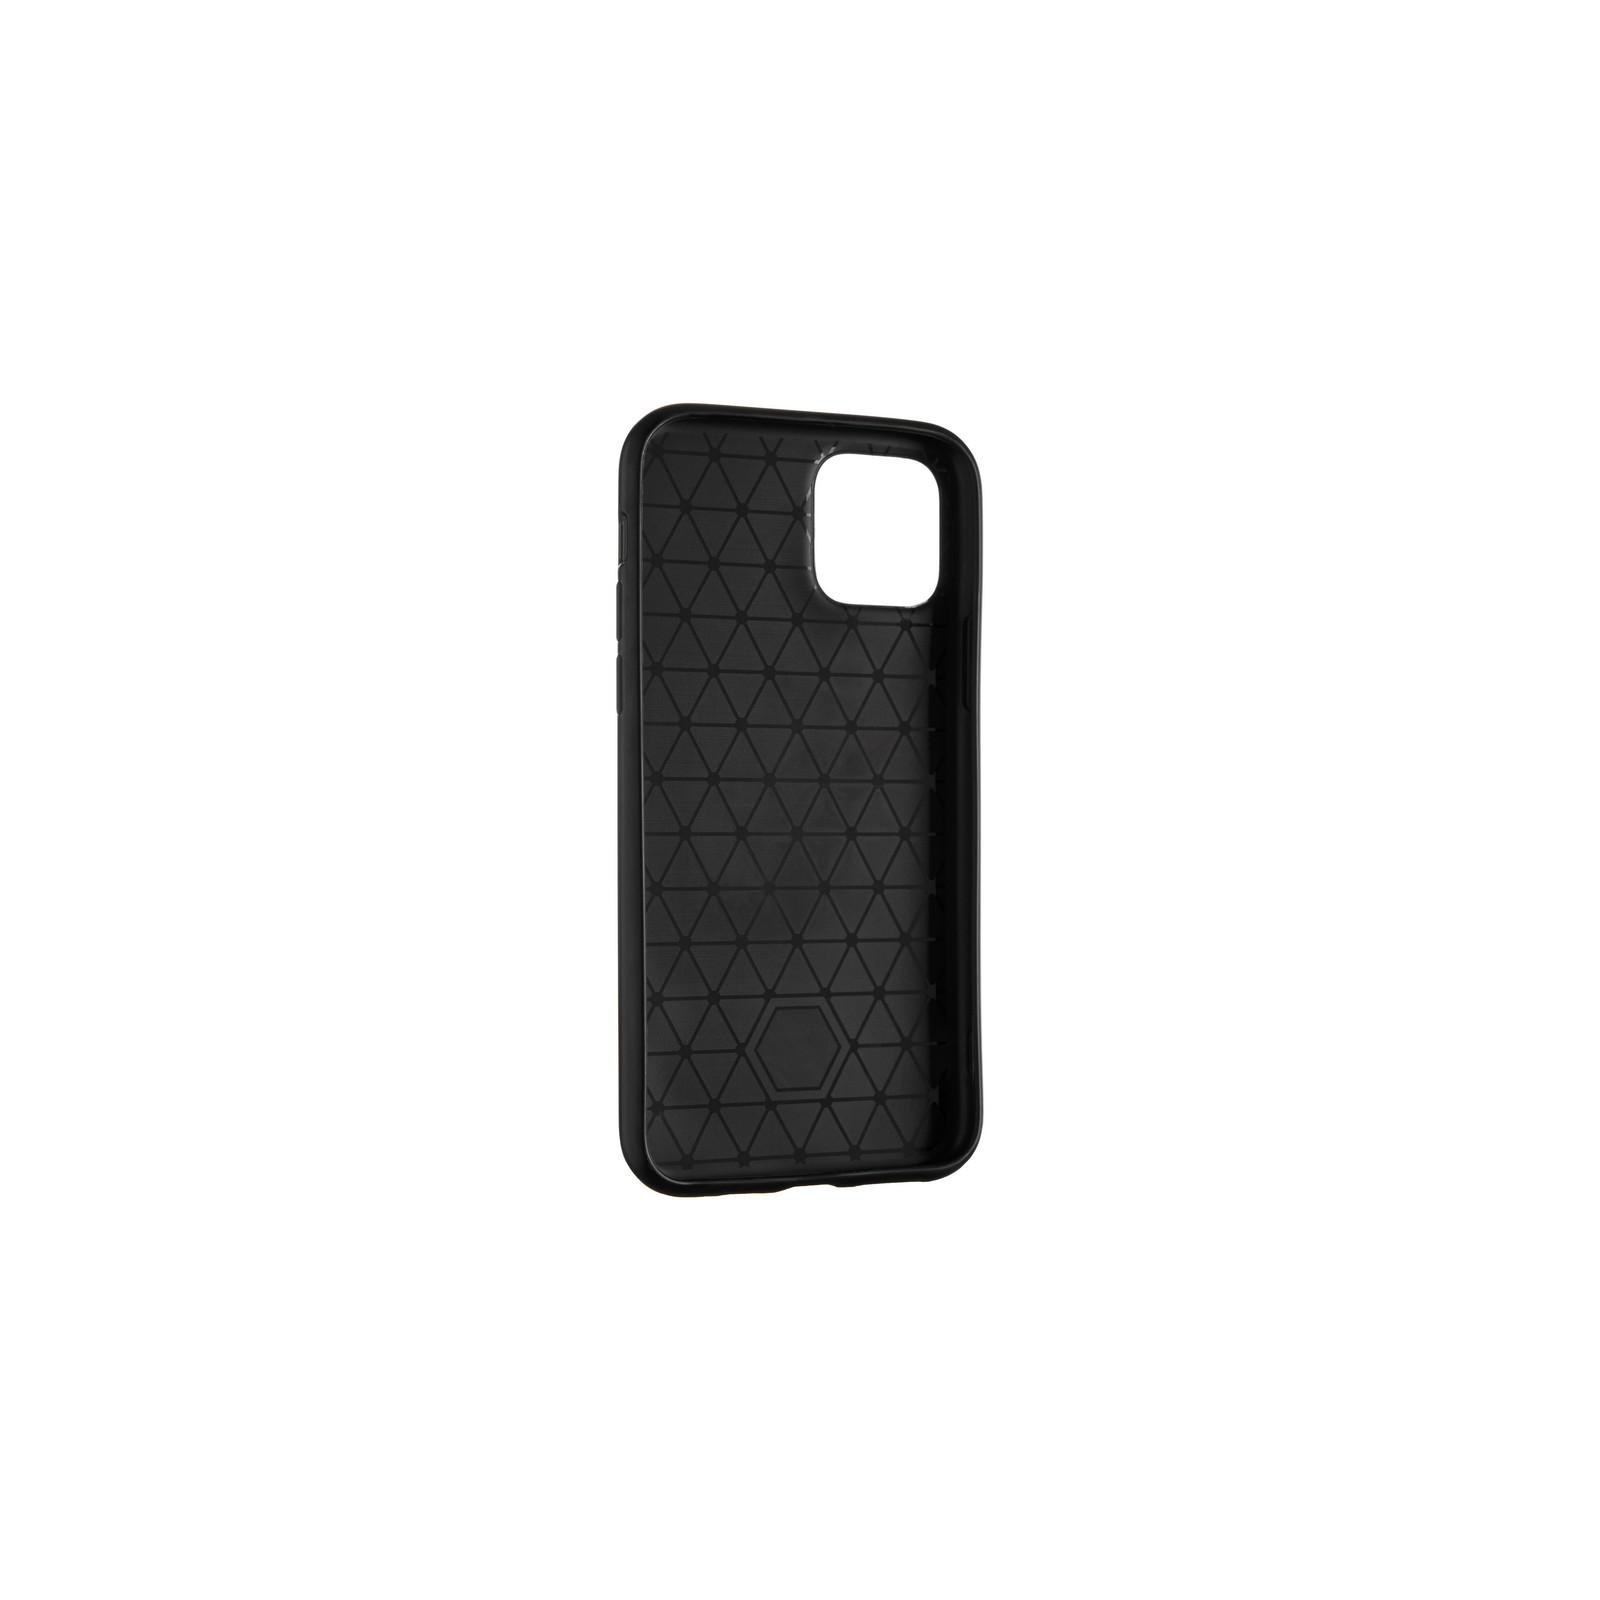 Чехол для мобильного телефона Gelius Metal Glass Case for iPhone 11 Pro Black (00000077027)